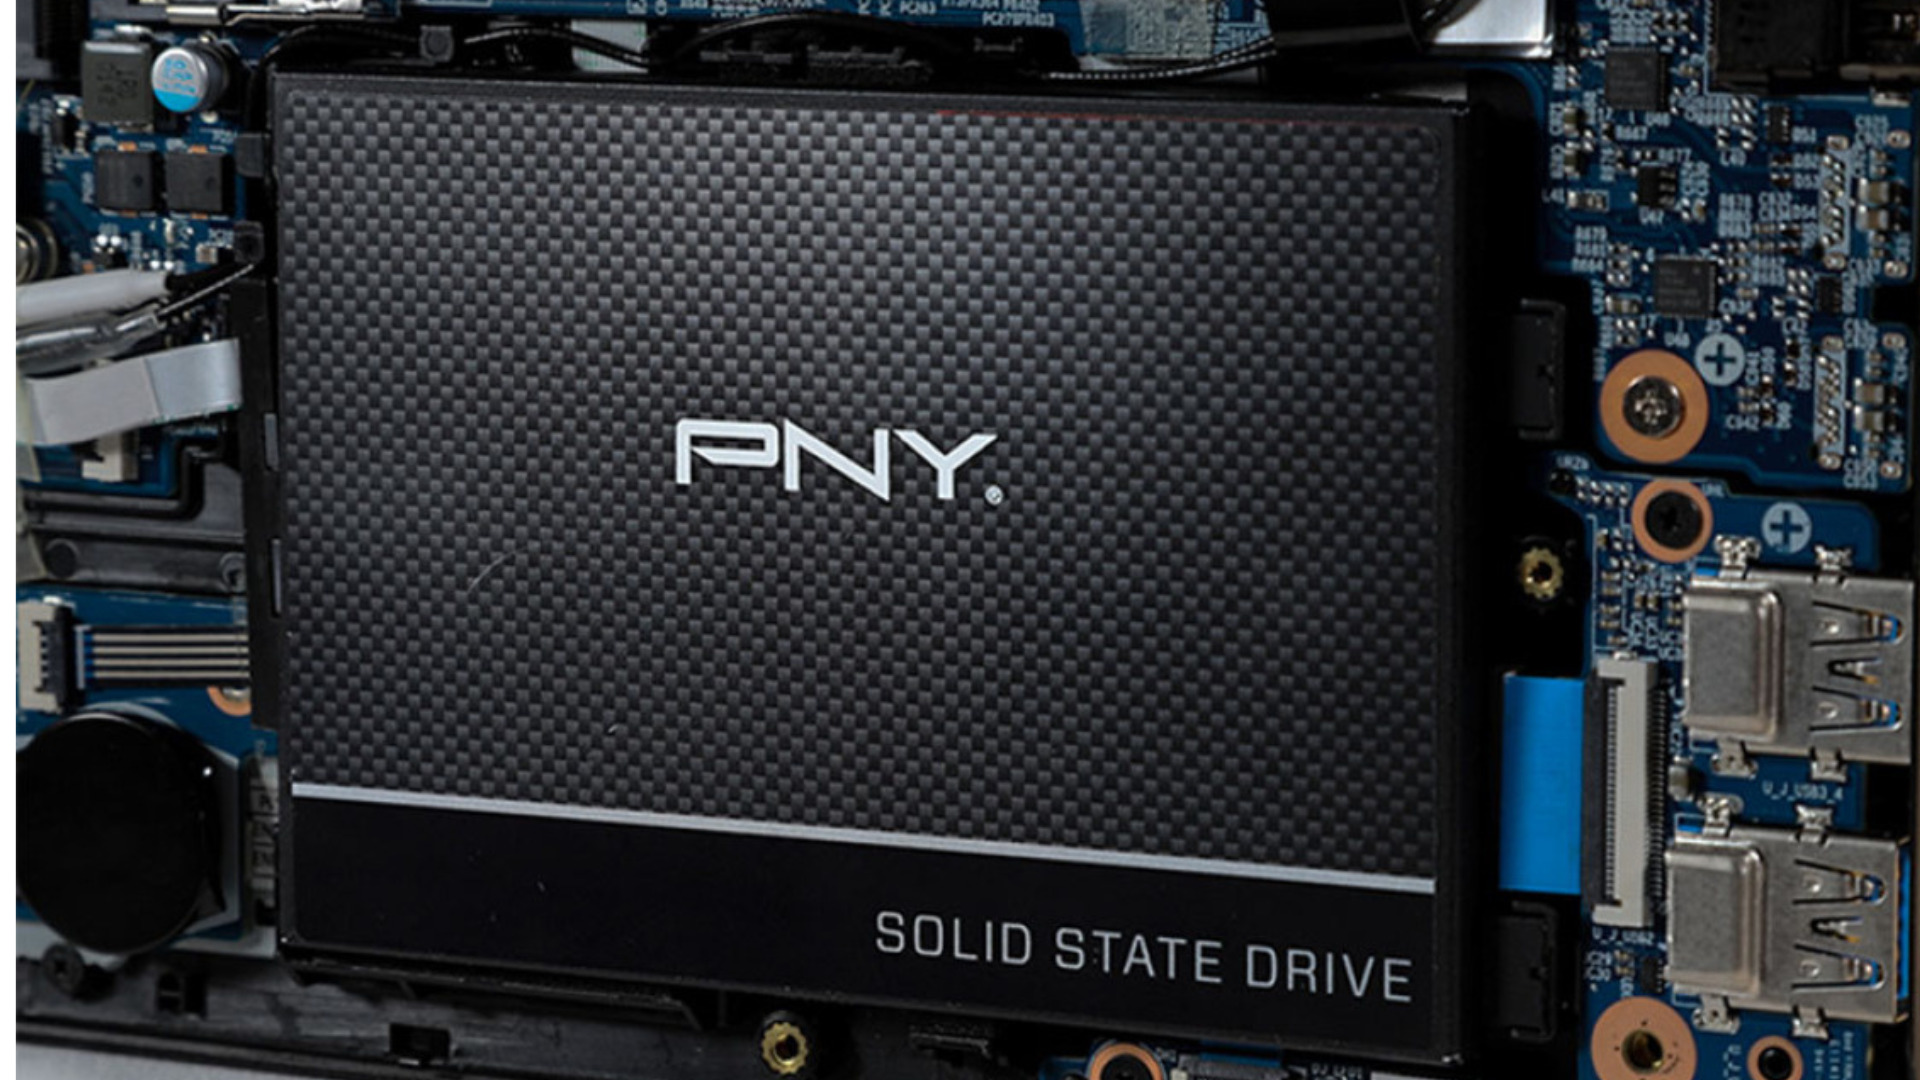 Le performant SSD PNY CS900 de 1 To est à un excellent prix : 64,99 €  seulement